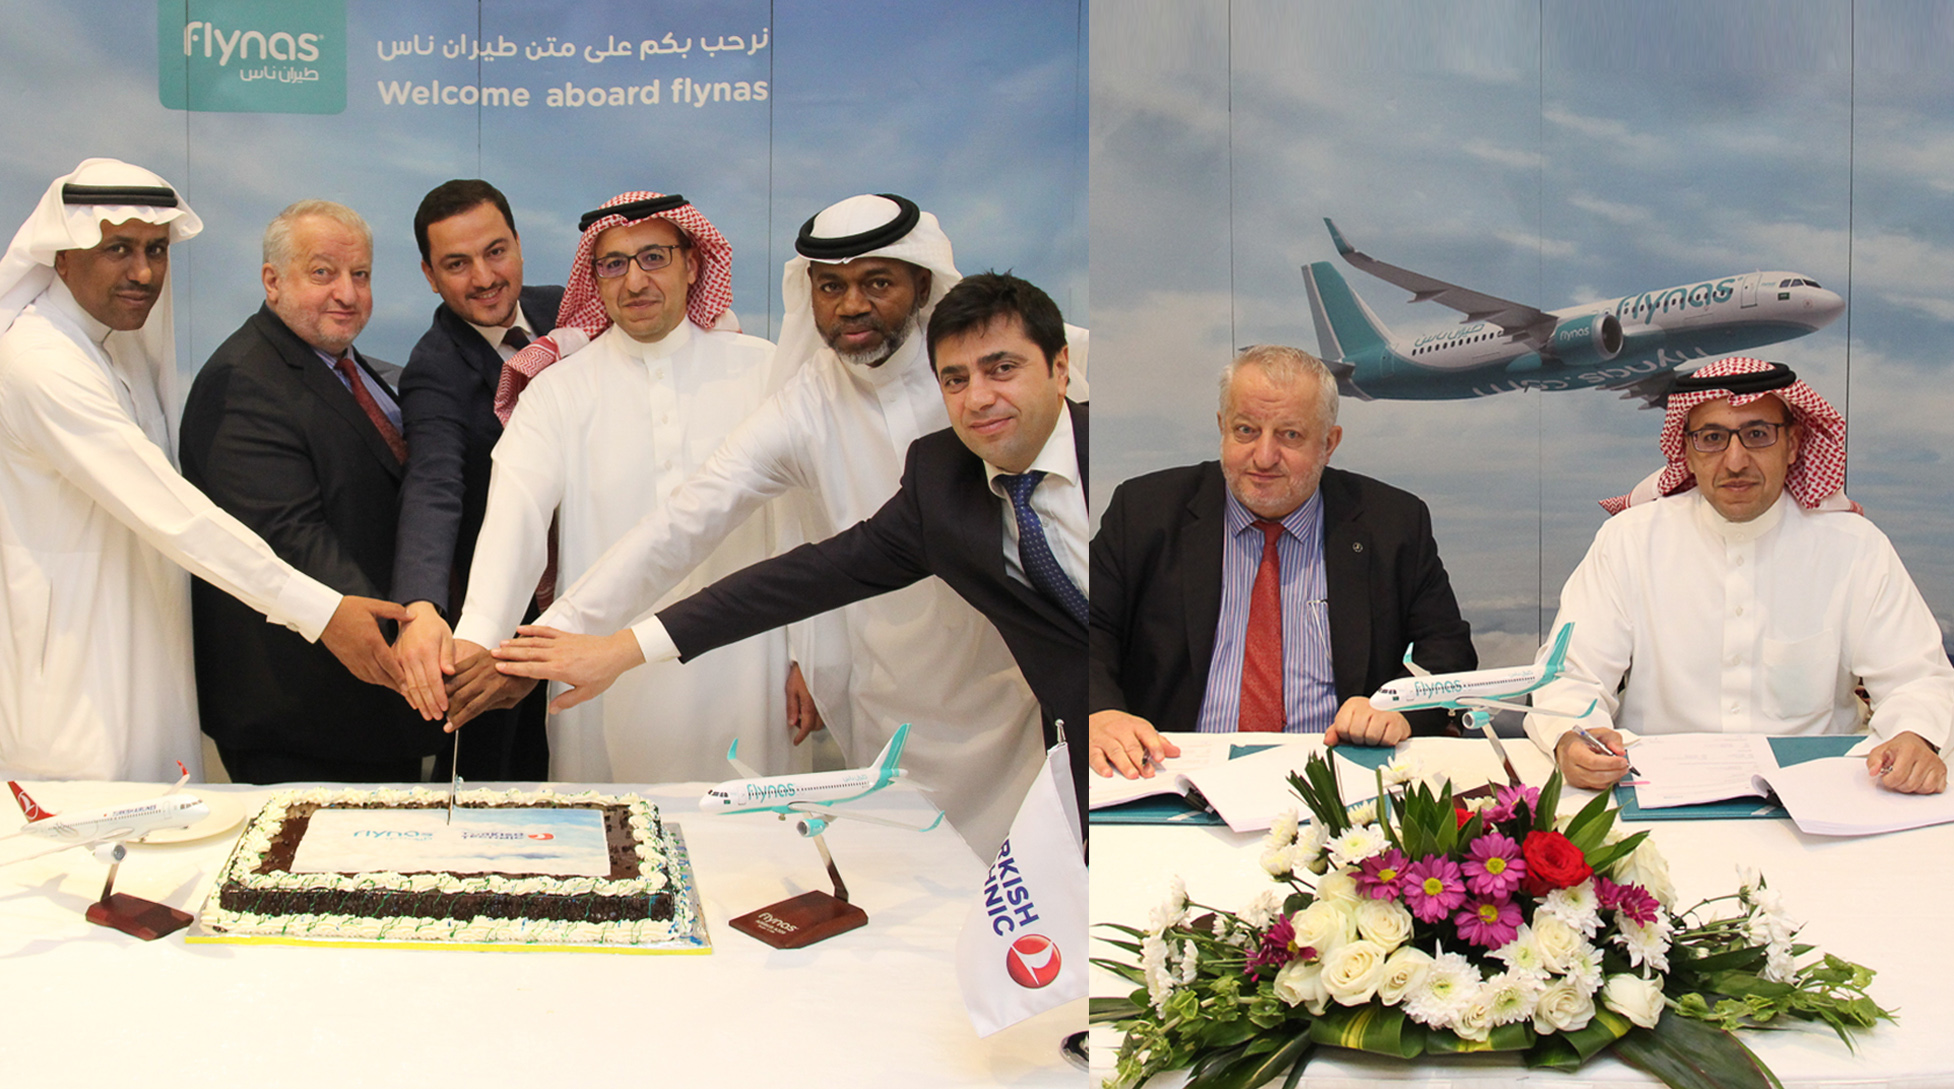 طيران ناس يوقع عقدًا مع شركة تركية لتوريد وإصلاح قطع غيار طائرات أيرباص A320ceo/A320neo